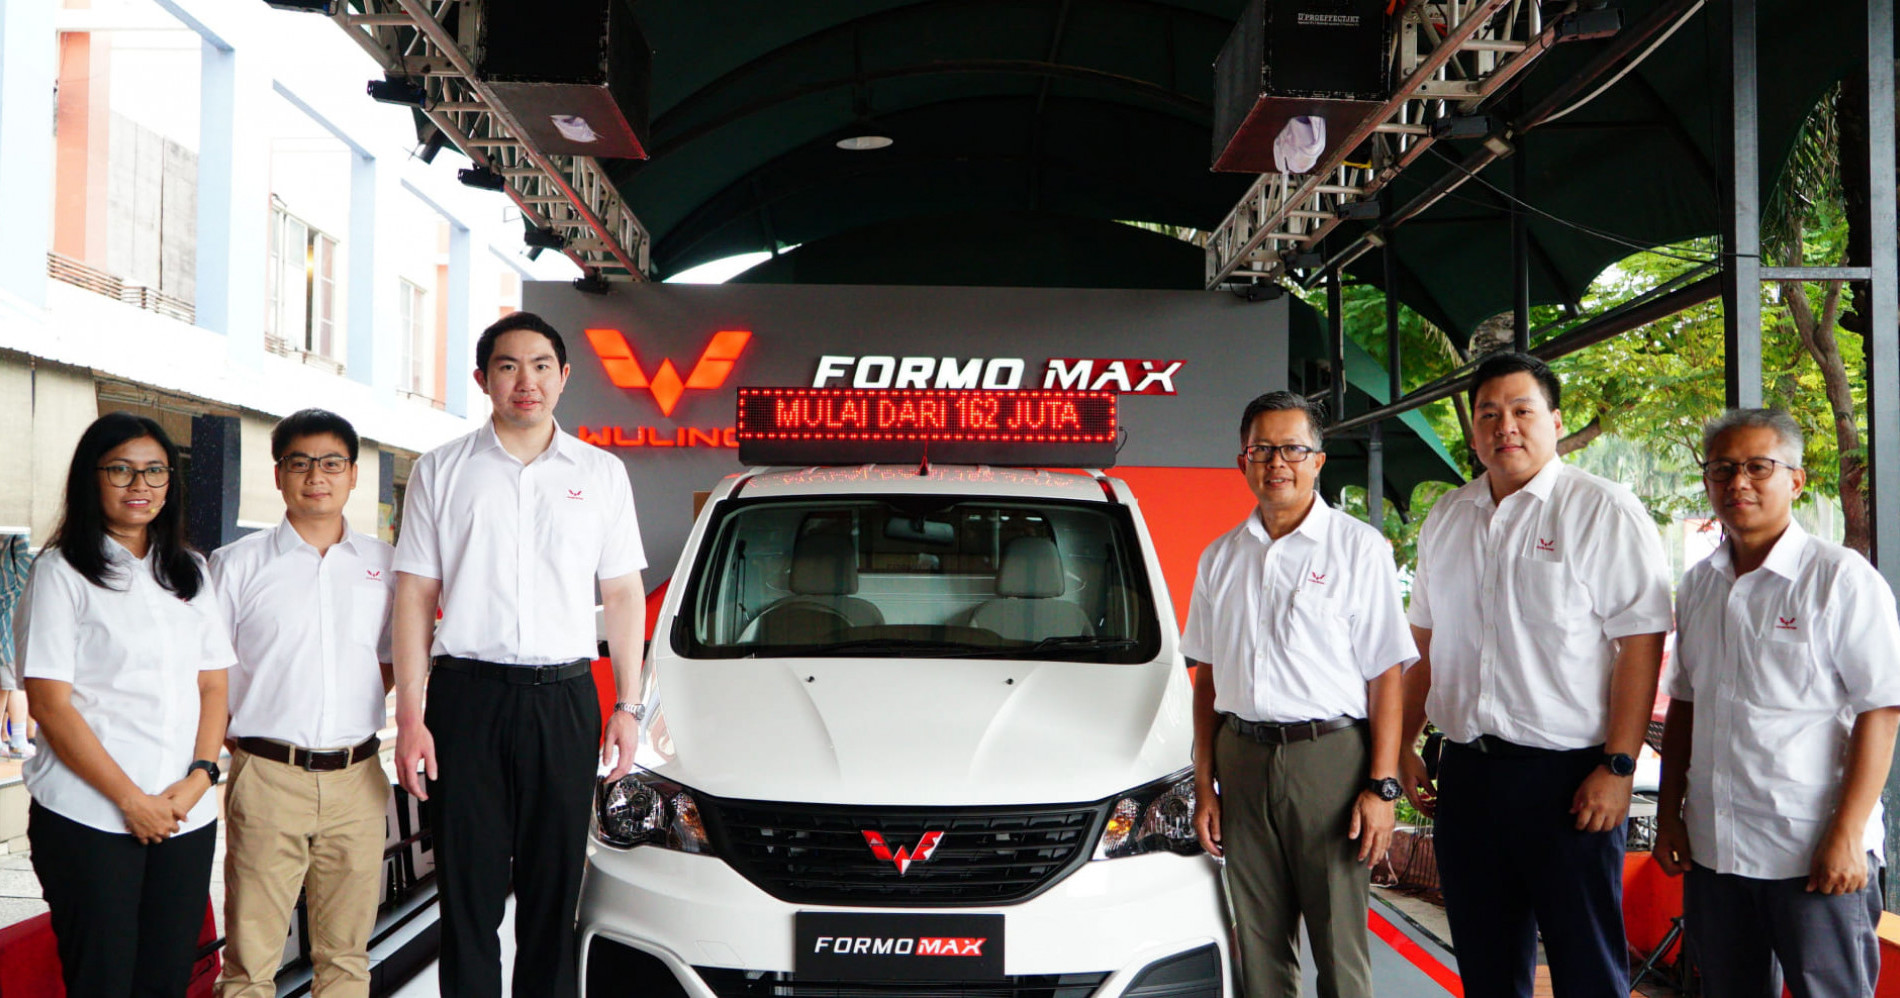 Foto: Wuling Resmi Luncurkan Formo Max untuk Mendukung Dunia Usaha Indonesia